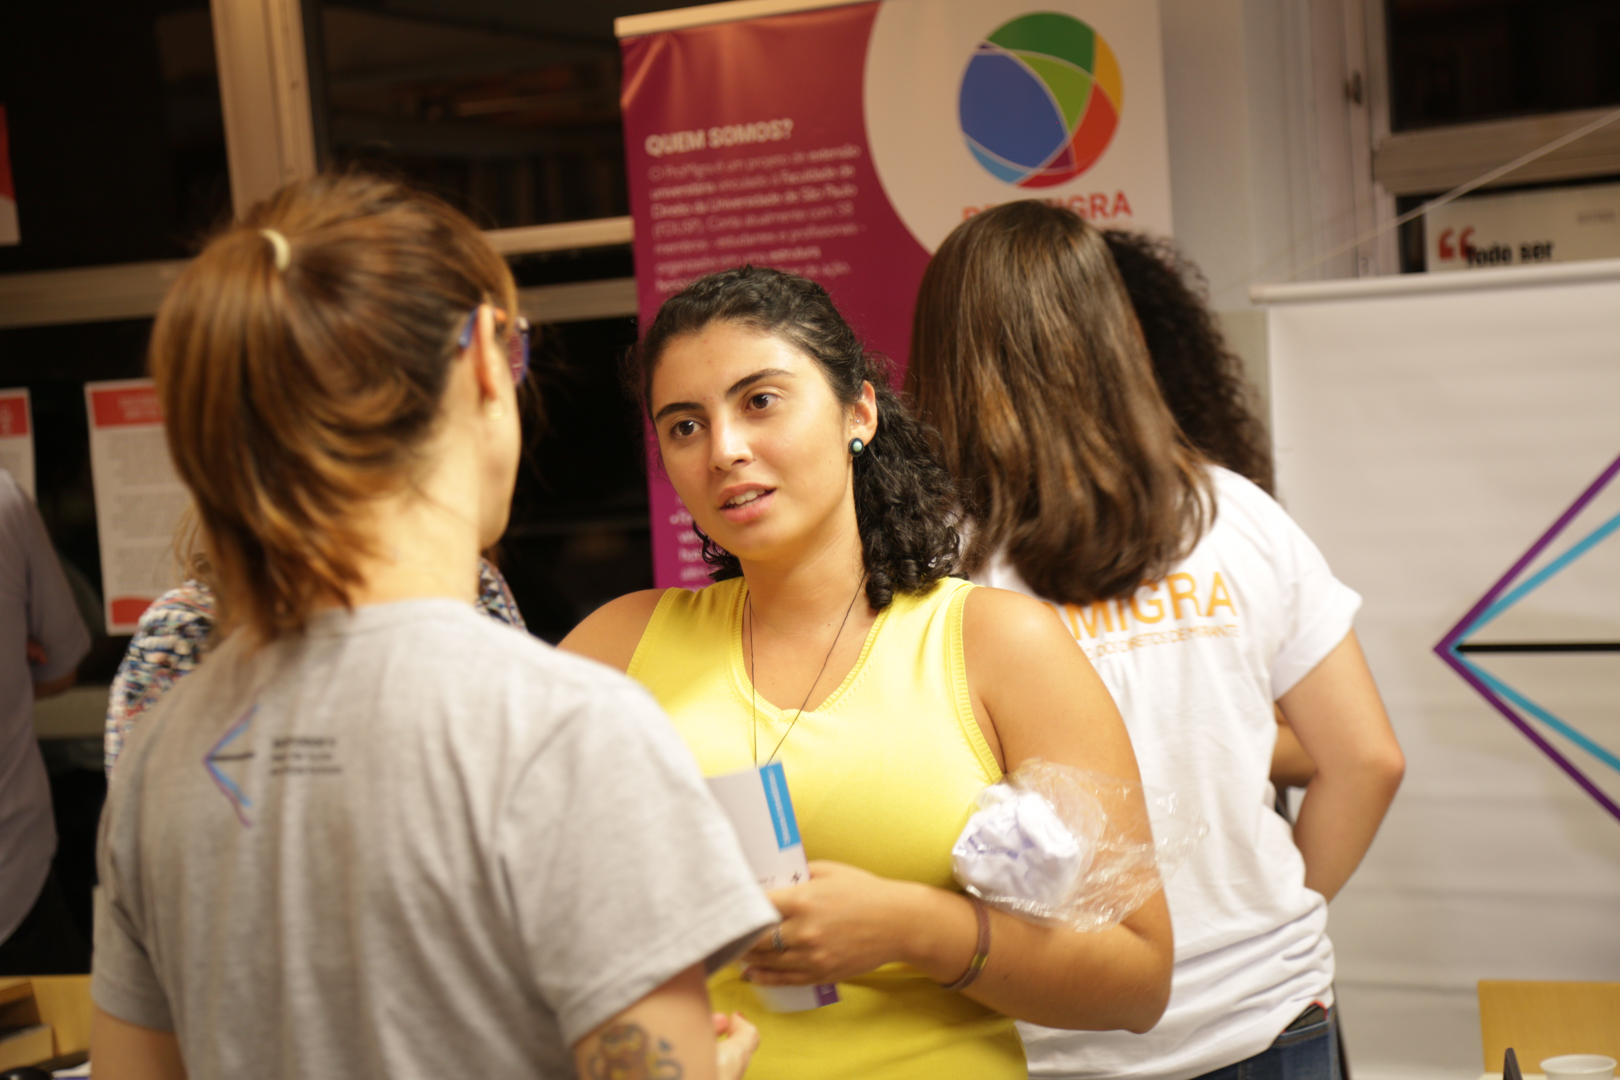 Participante expõe seu projeto durante a III Feira de Ideias, realizada pela Conectas, em seu escritório, em São Paulo (SP), em comemoração ao Dia Internacional dos Direitos Humanos.